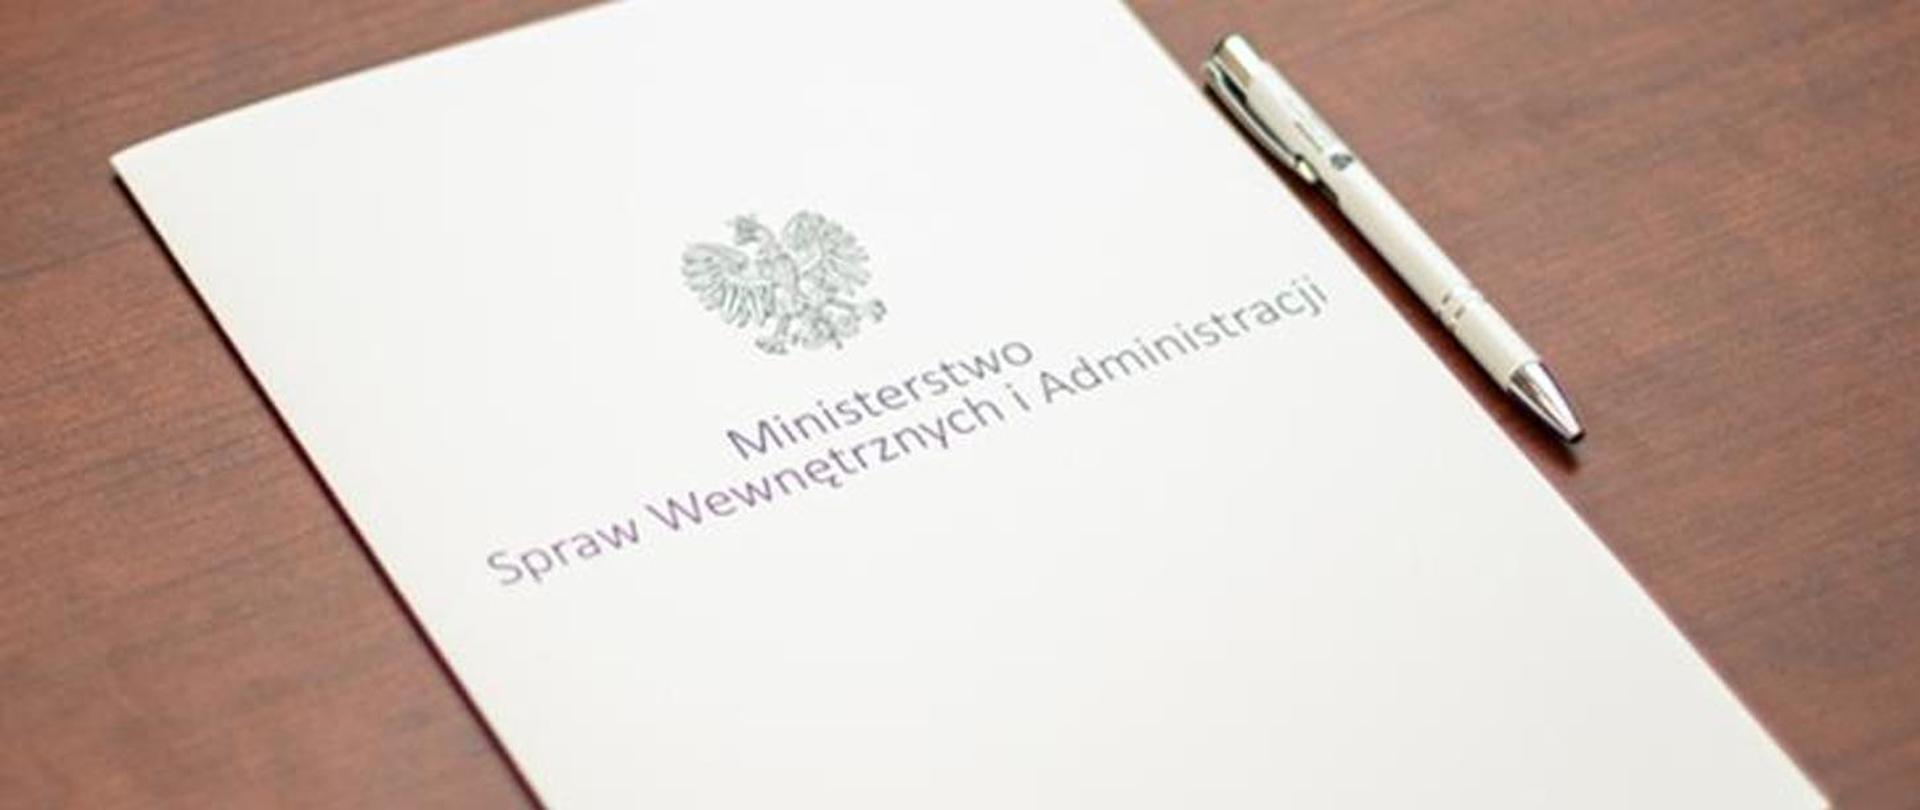 Biała teczka leży na biurku, z napisem Ministerstwo Spraw Wewnętrznych i Administracji i godłem. Z prawej strony leży biały długopis.